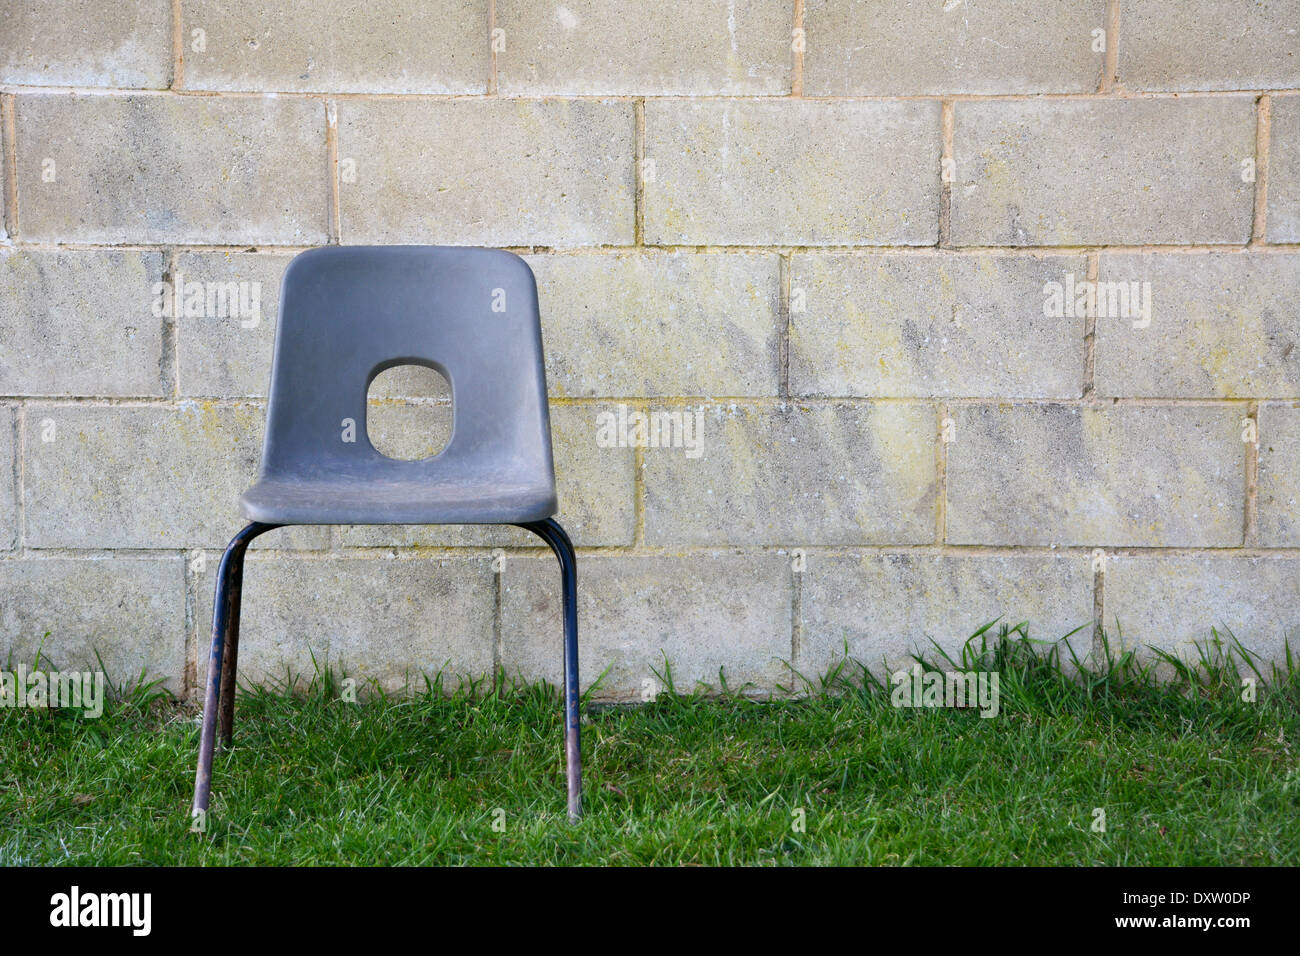 Silla de plástico vacías abandonadas sobre el césped delante de una pared de bloques de concreto Foto de stock